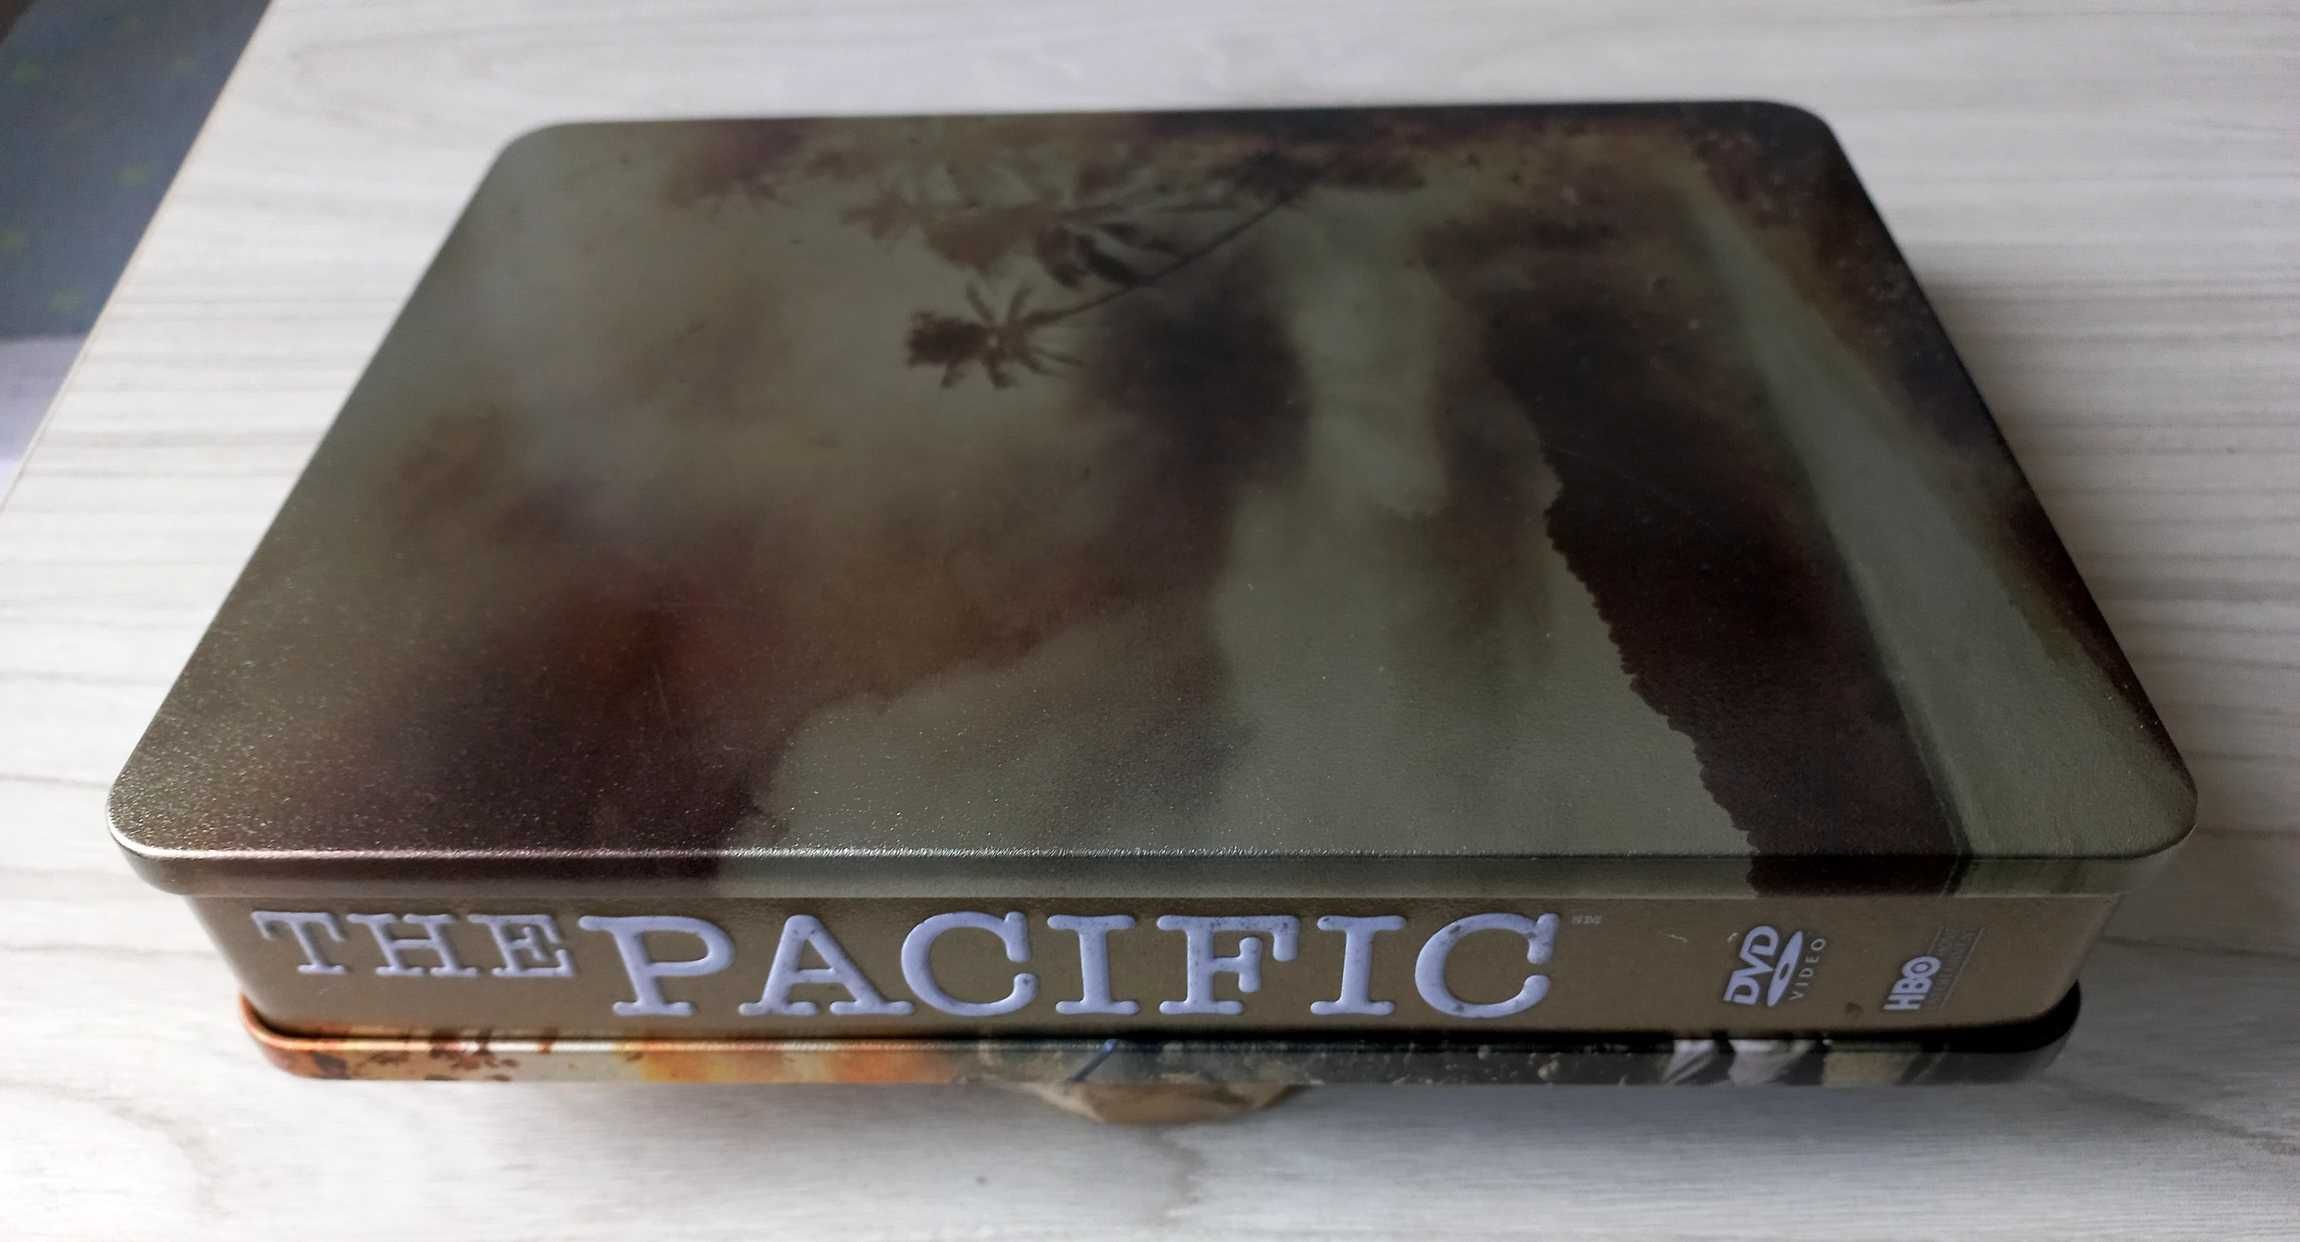 Serial "Pacyfik" 10 odcinków na 6 DVD